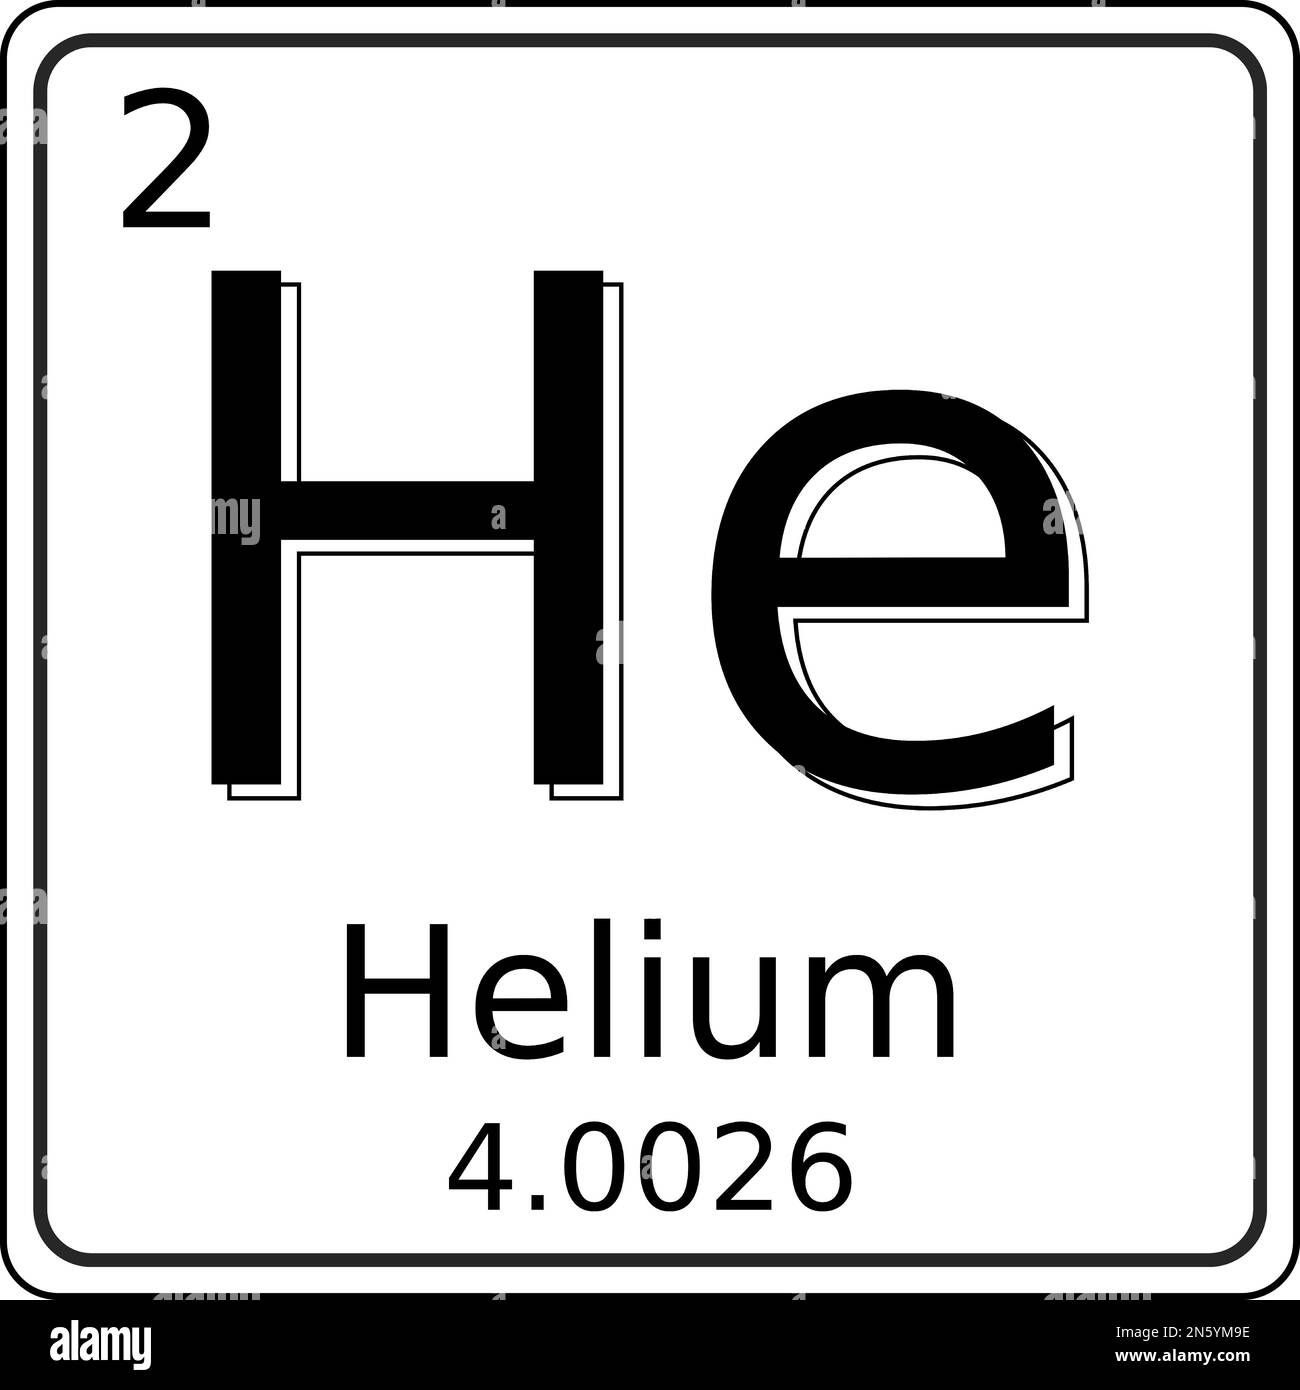 Schwarz-weiße Vektorgrafik des Symbols des Helium (He)-Elements im Periodensystem der Elemente. Sie enthält auch die Atomnummer und das Atom Stock Vektor